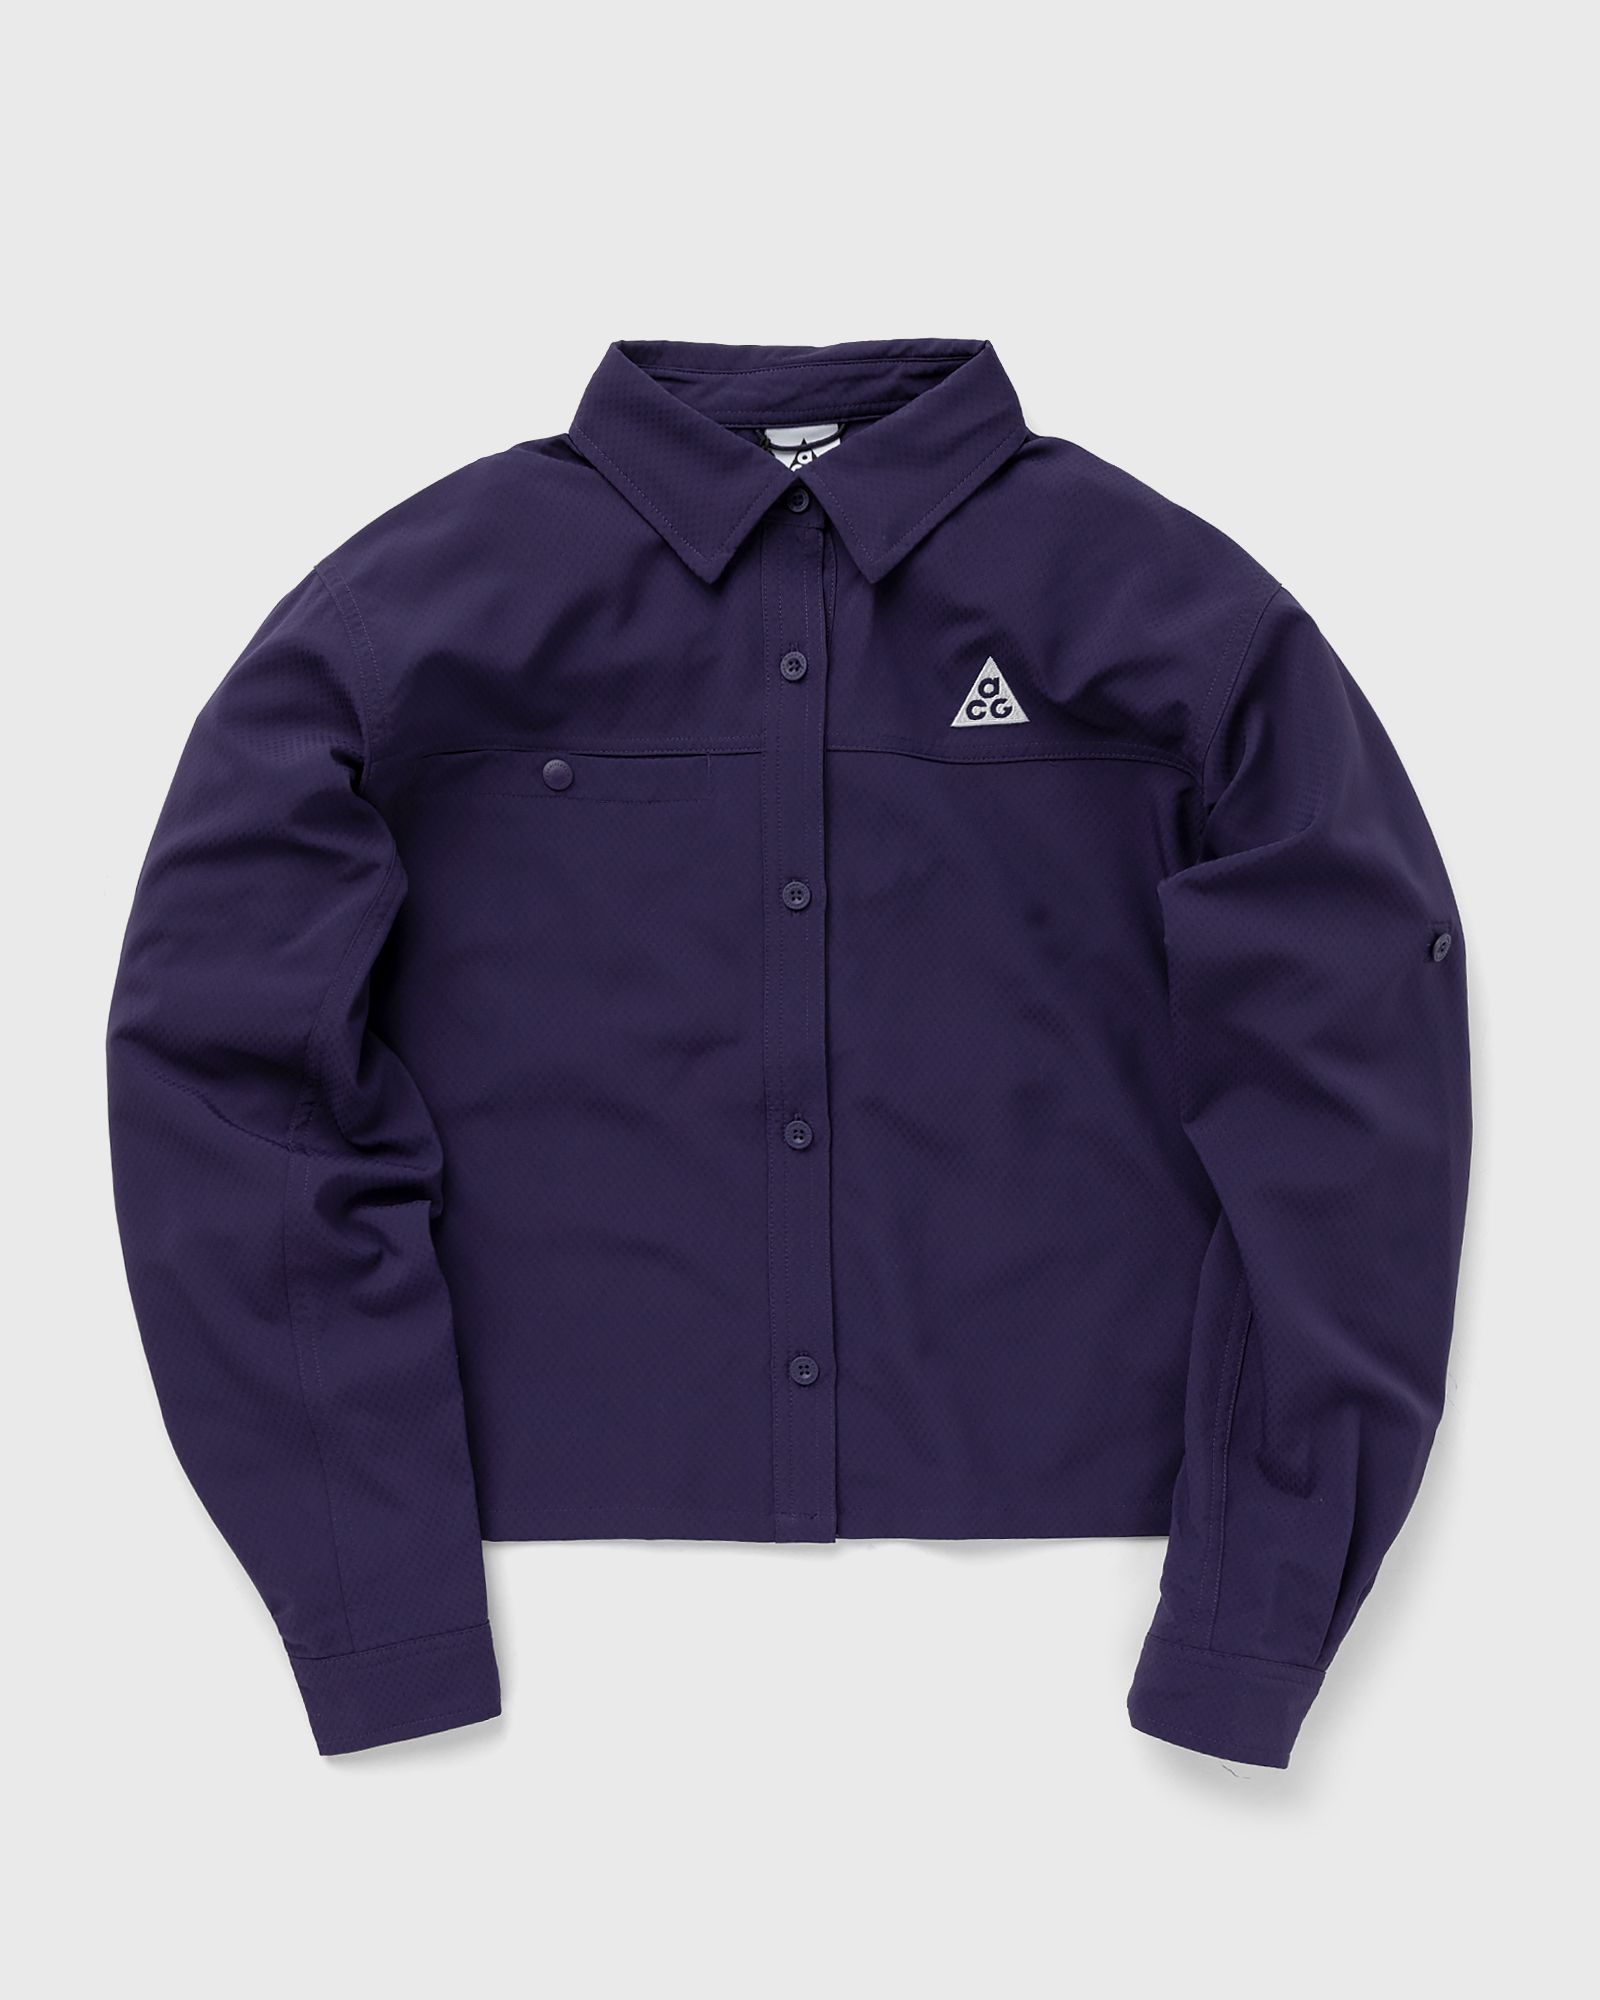 Nike - acg long sleeve trail top women shirts & blouses purple in größe:xs